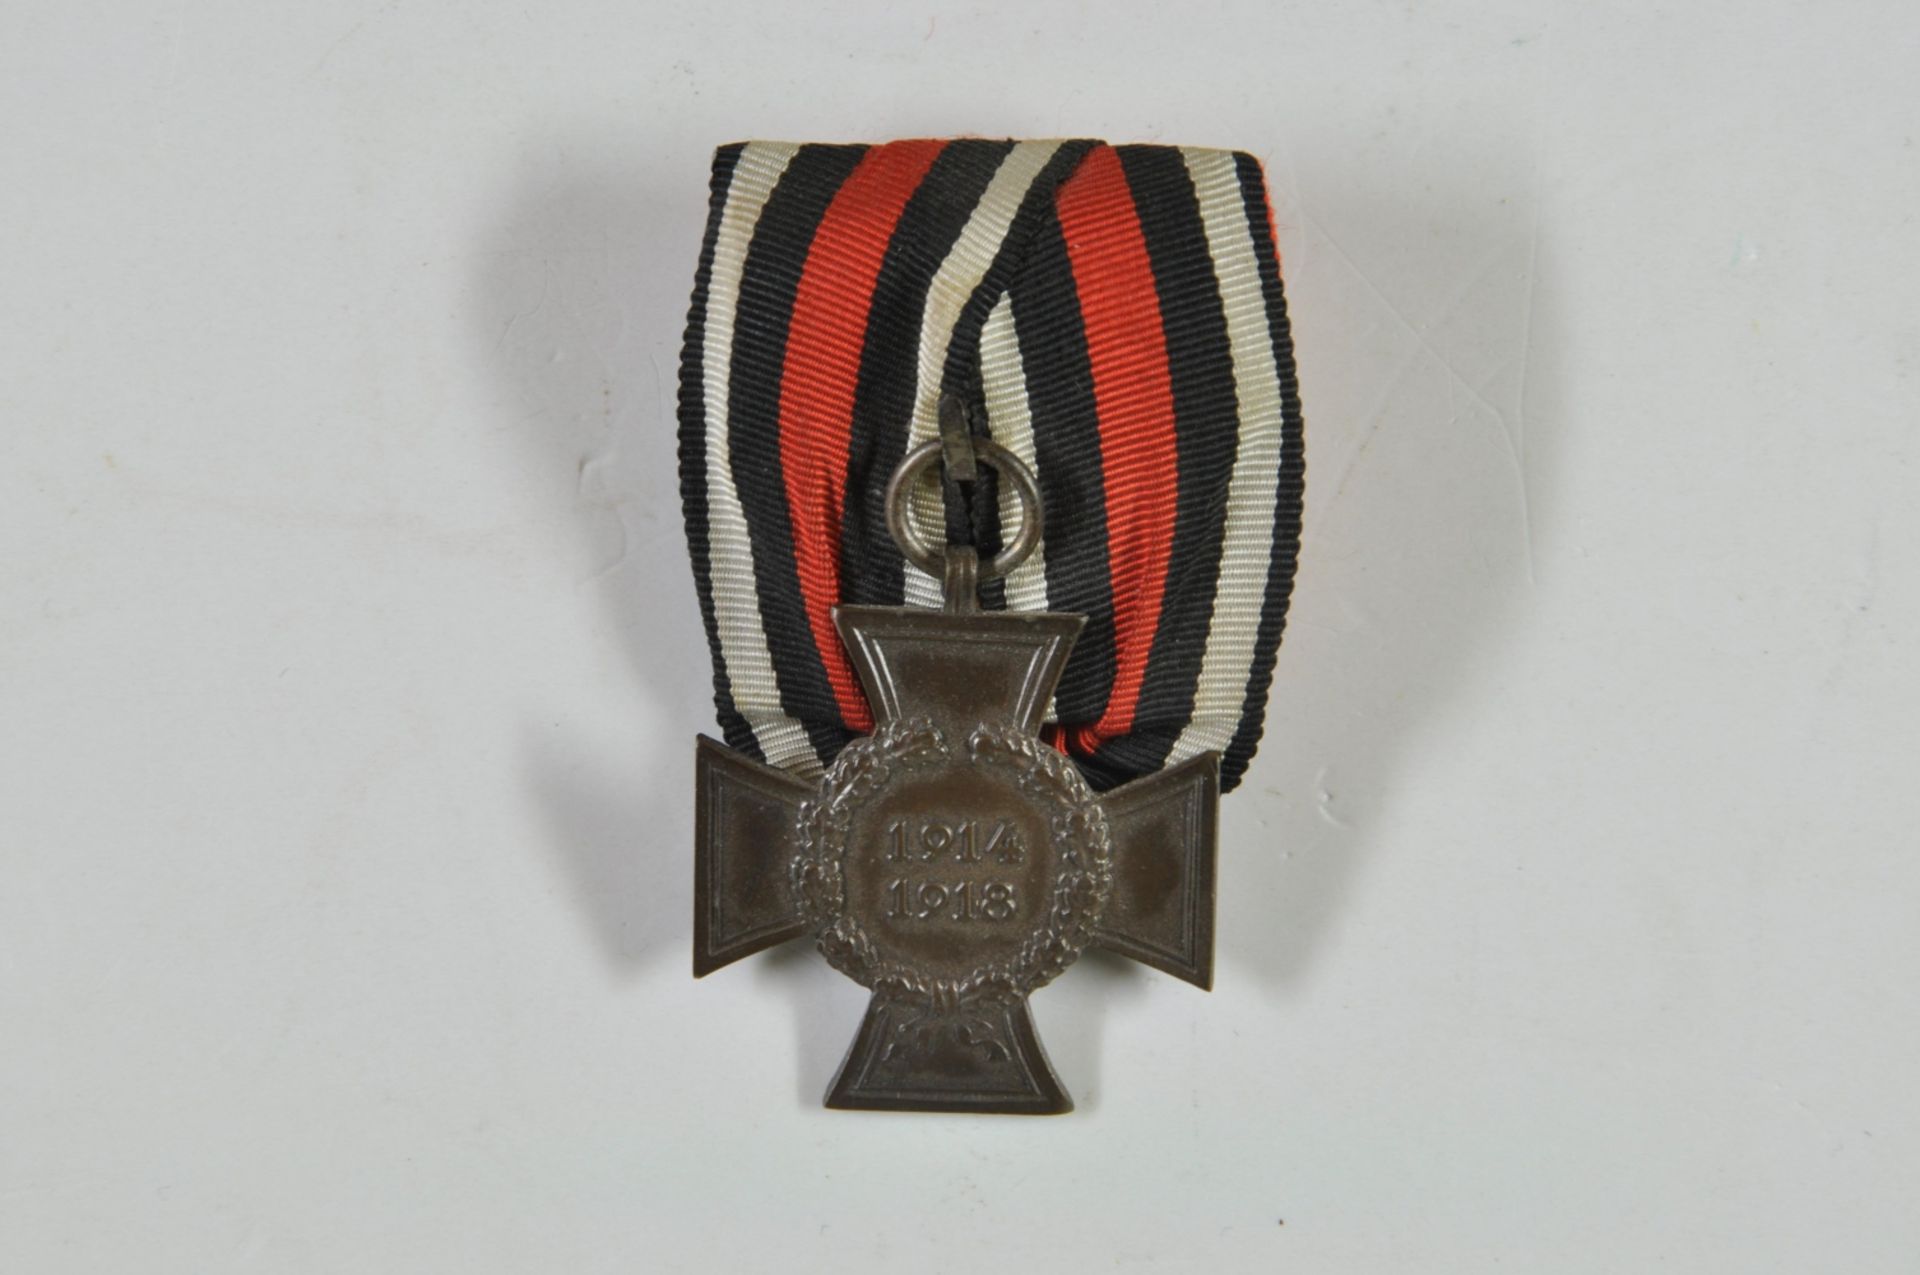 Verleihungsurkunde für das Ehrenkreuz für Kriegsteilnehmer, datiert München den 10. Mai 1935, mit Eh